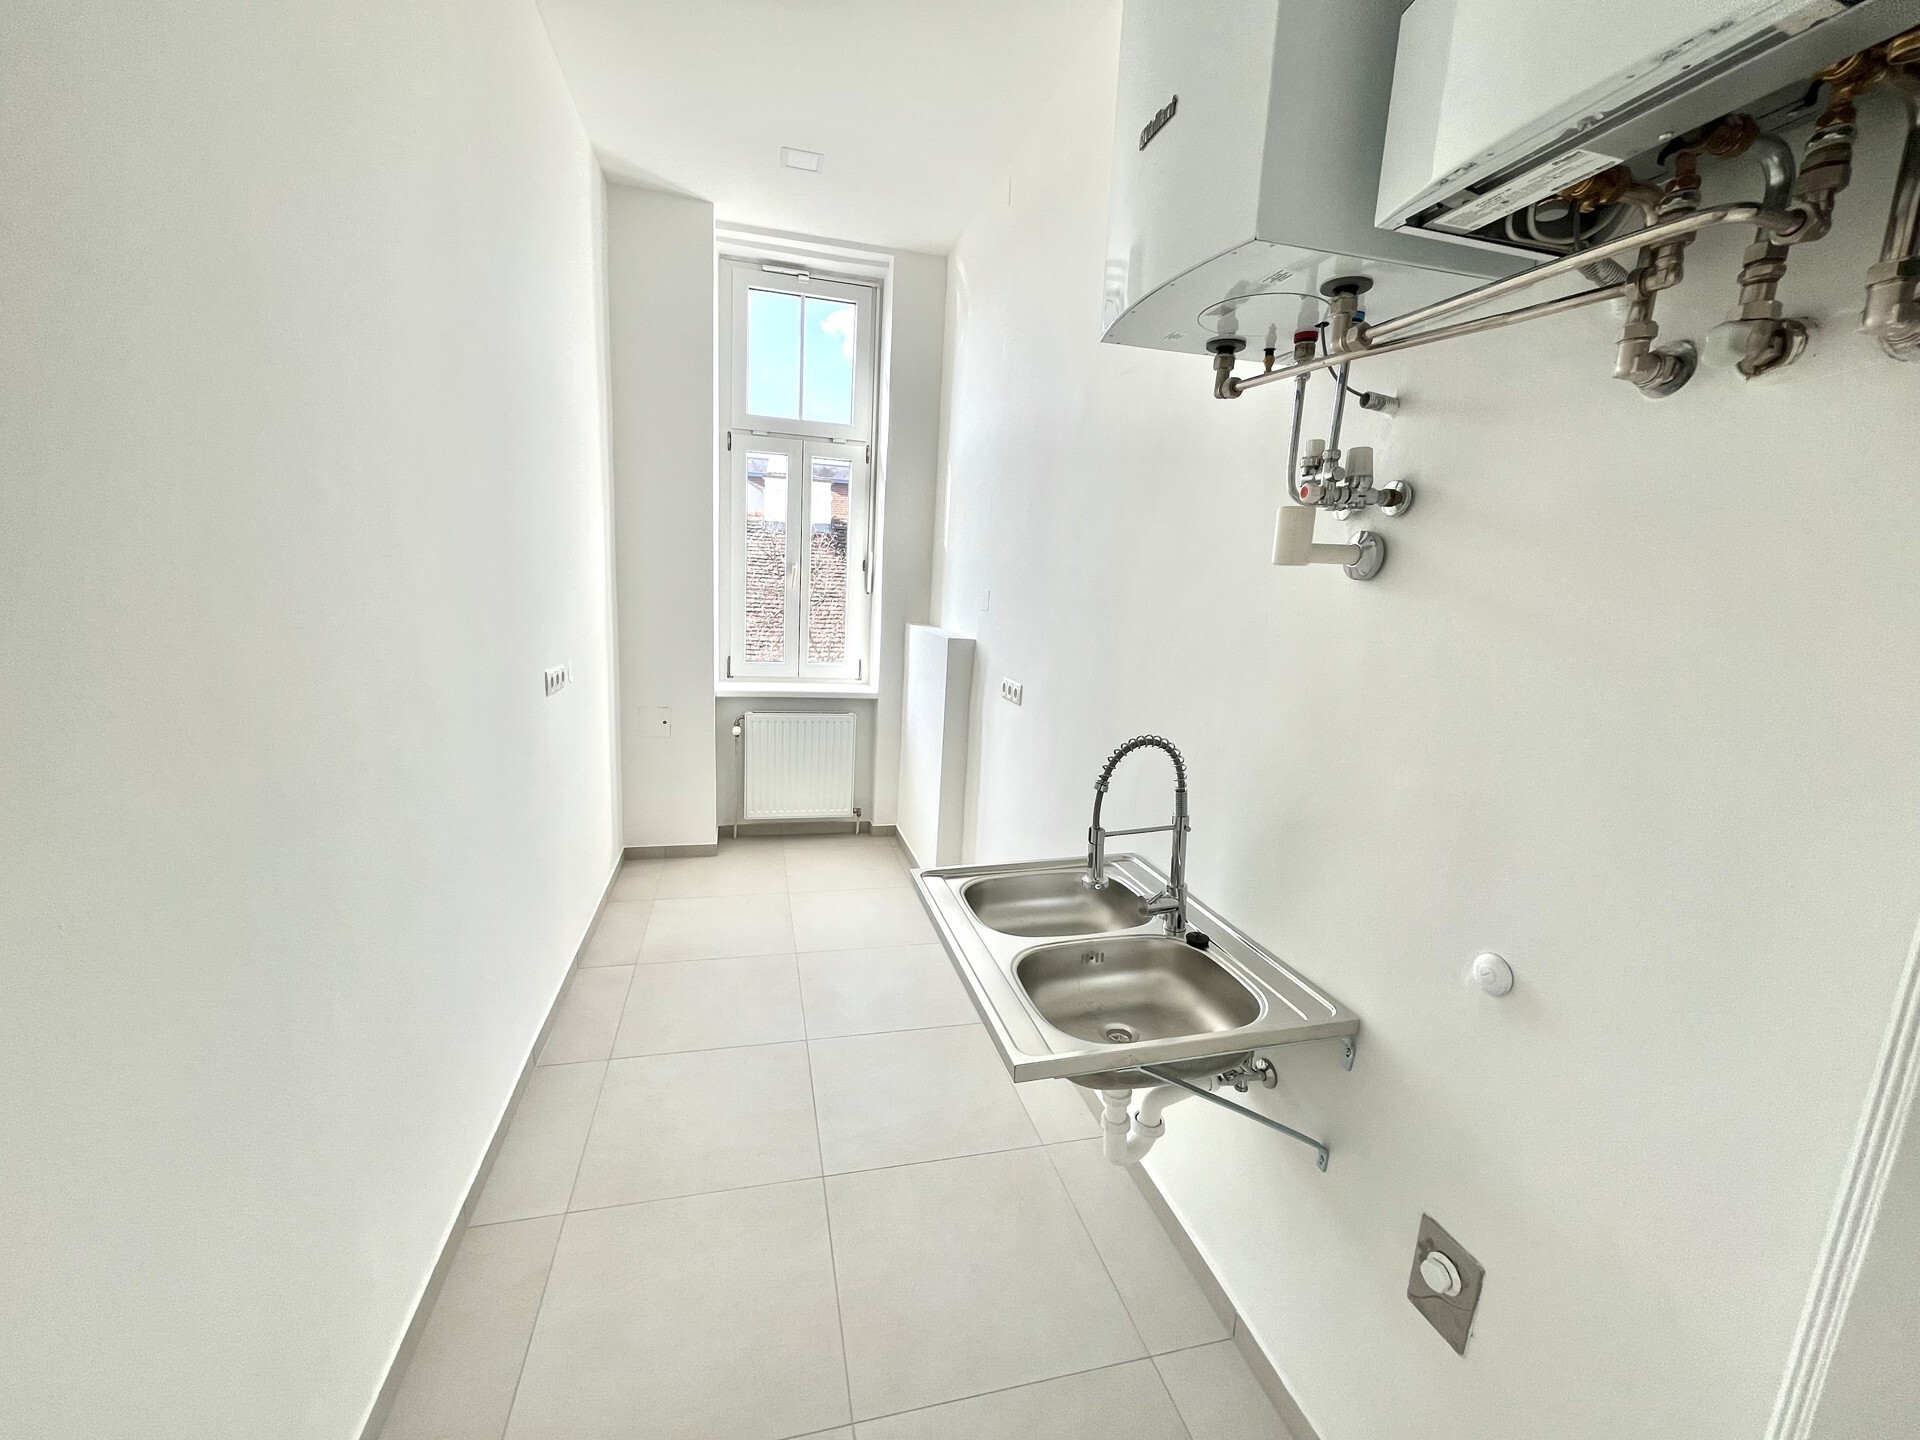 Hofseitige 2-Zimmer Wohnung nahe Wielandpark in 1100 Wien zu mieten